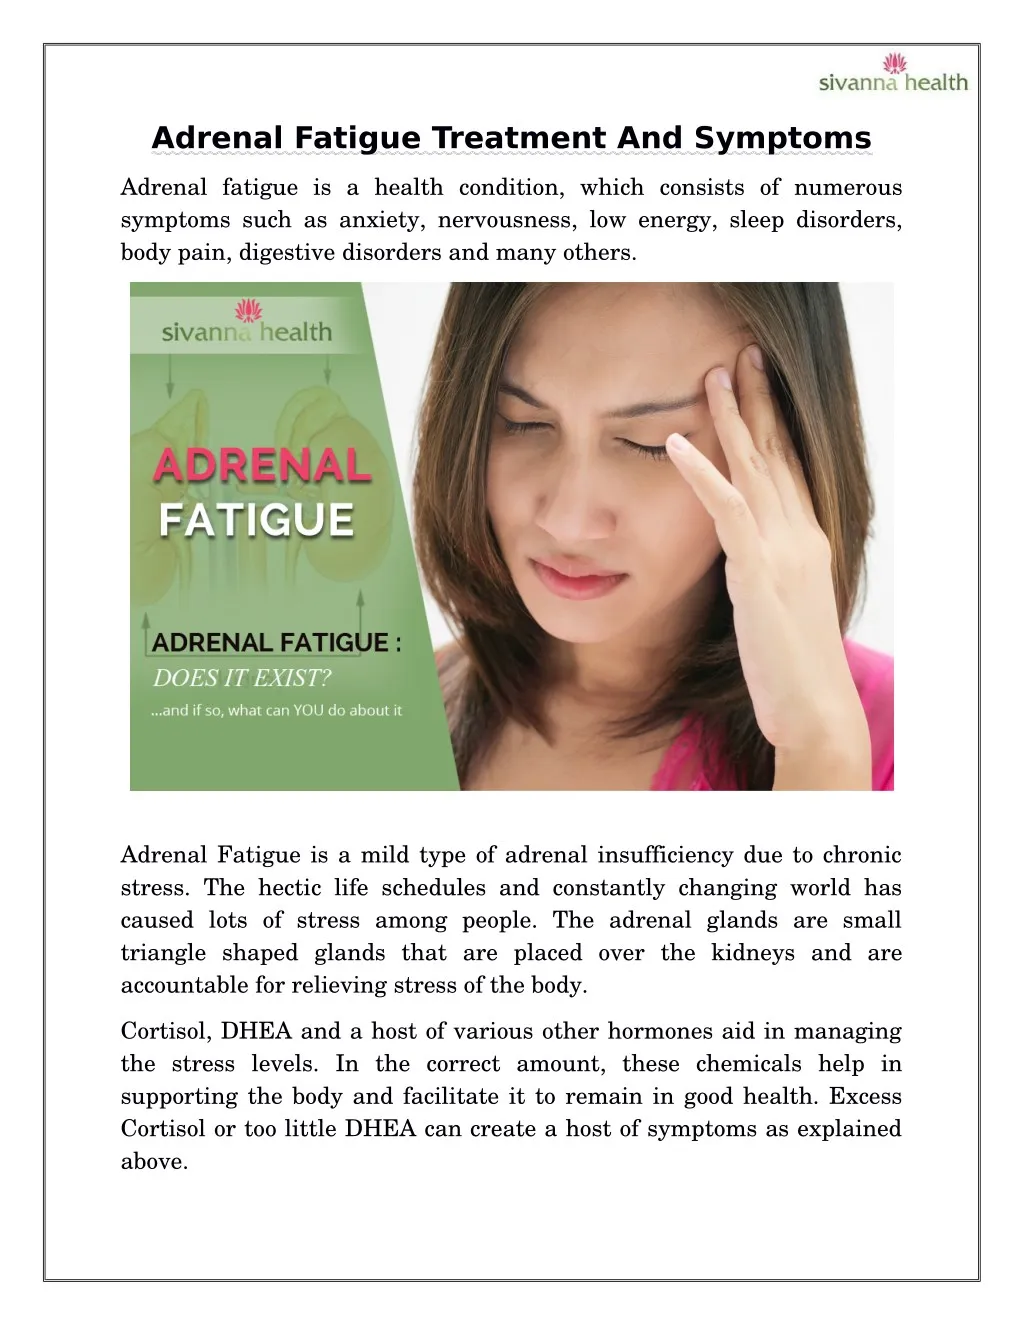 treatment of adrenal fatigue